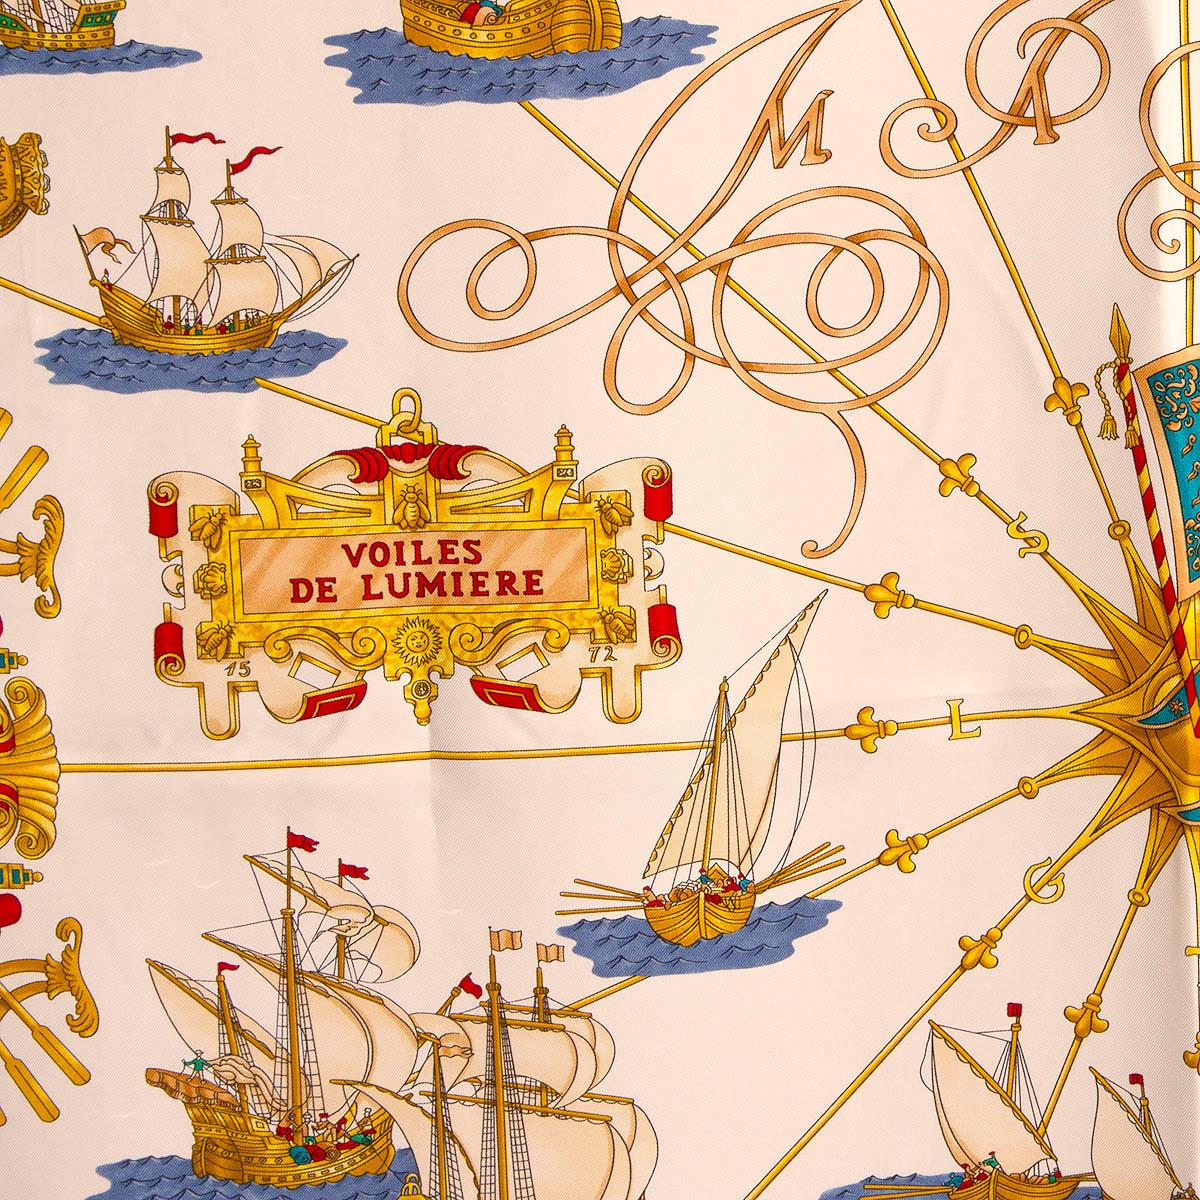 100 % authentique Hermès 'Voiles de Lumierèr 90' foulard par Joachim Metz en sergé de soie blanc (100 %) avec bordure marine et détails en or, vert, rouge et sarcelle. A été porté et est en excellent état.

Publié en 1995

L'histoire derrière